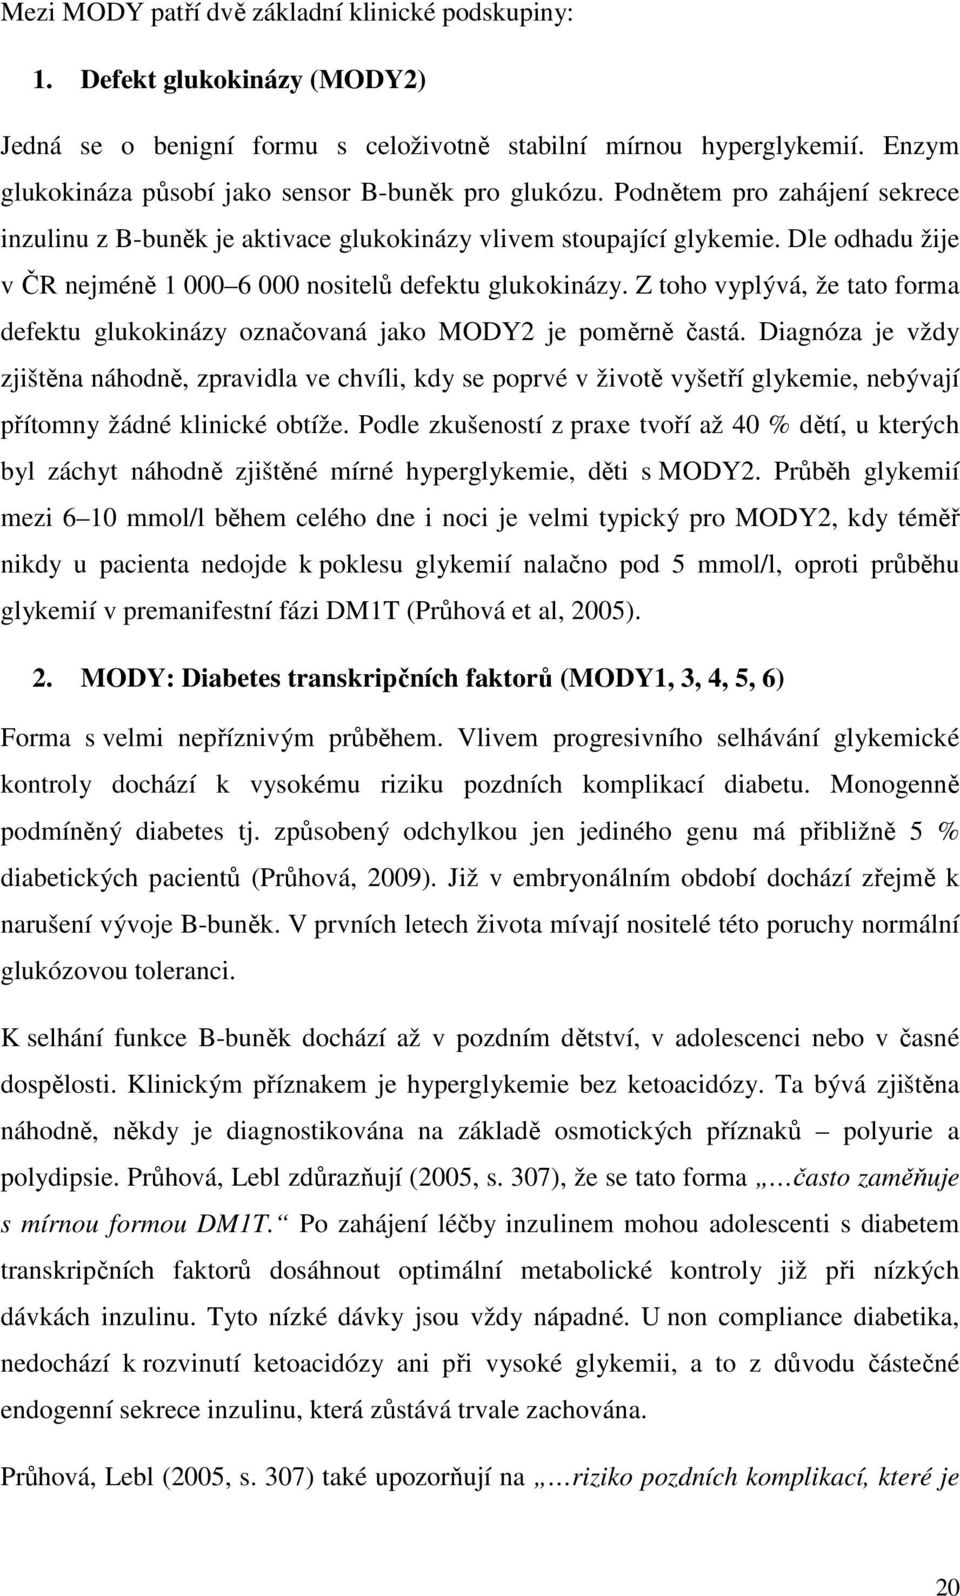 Dle odhadu žije v ČR nejméně 1 000 6 000 nositelů defektu glukokinázy. Z toho vyplývá, že tato forma defektu glukokinázy označovaná jako MODY2 je poměrně častá.